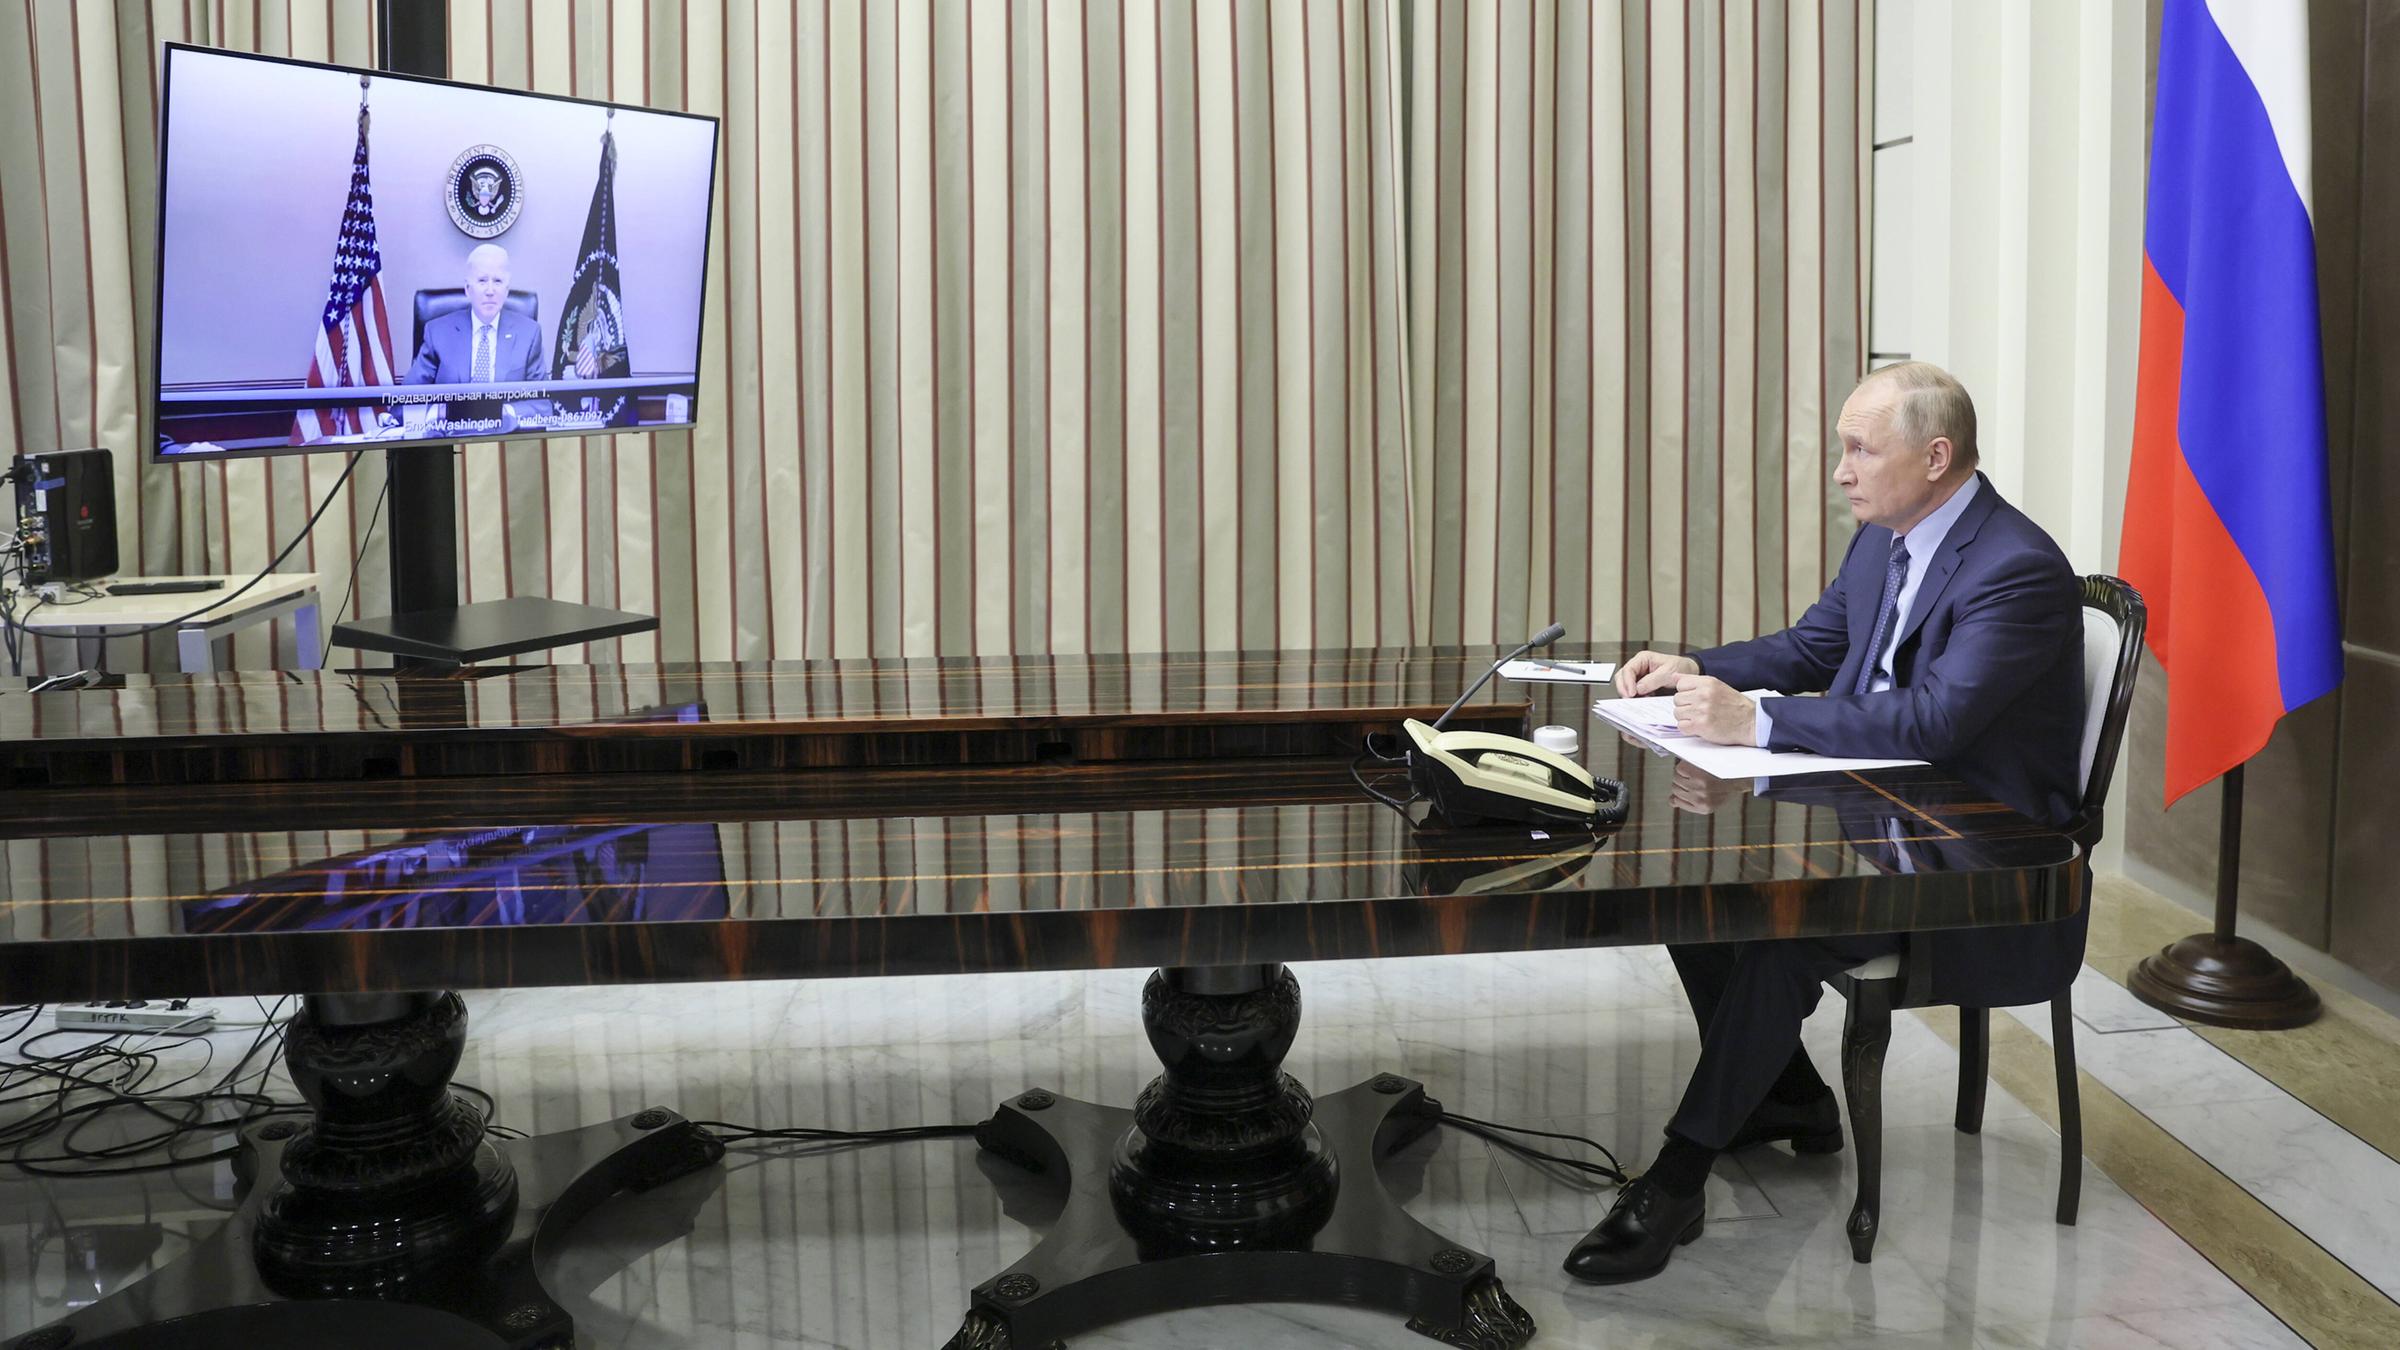 Der russische Präsident Vladimir Putin sitzt an einem langen, mächtigen Tisch und schaut auf einen Bildschirm, auf dem der amerikanische Präsident Joe Biden zu sehen ist.<br/>